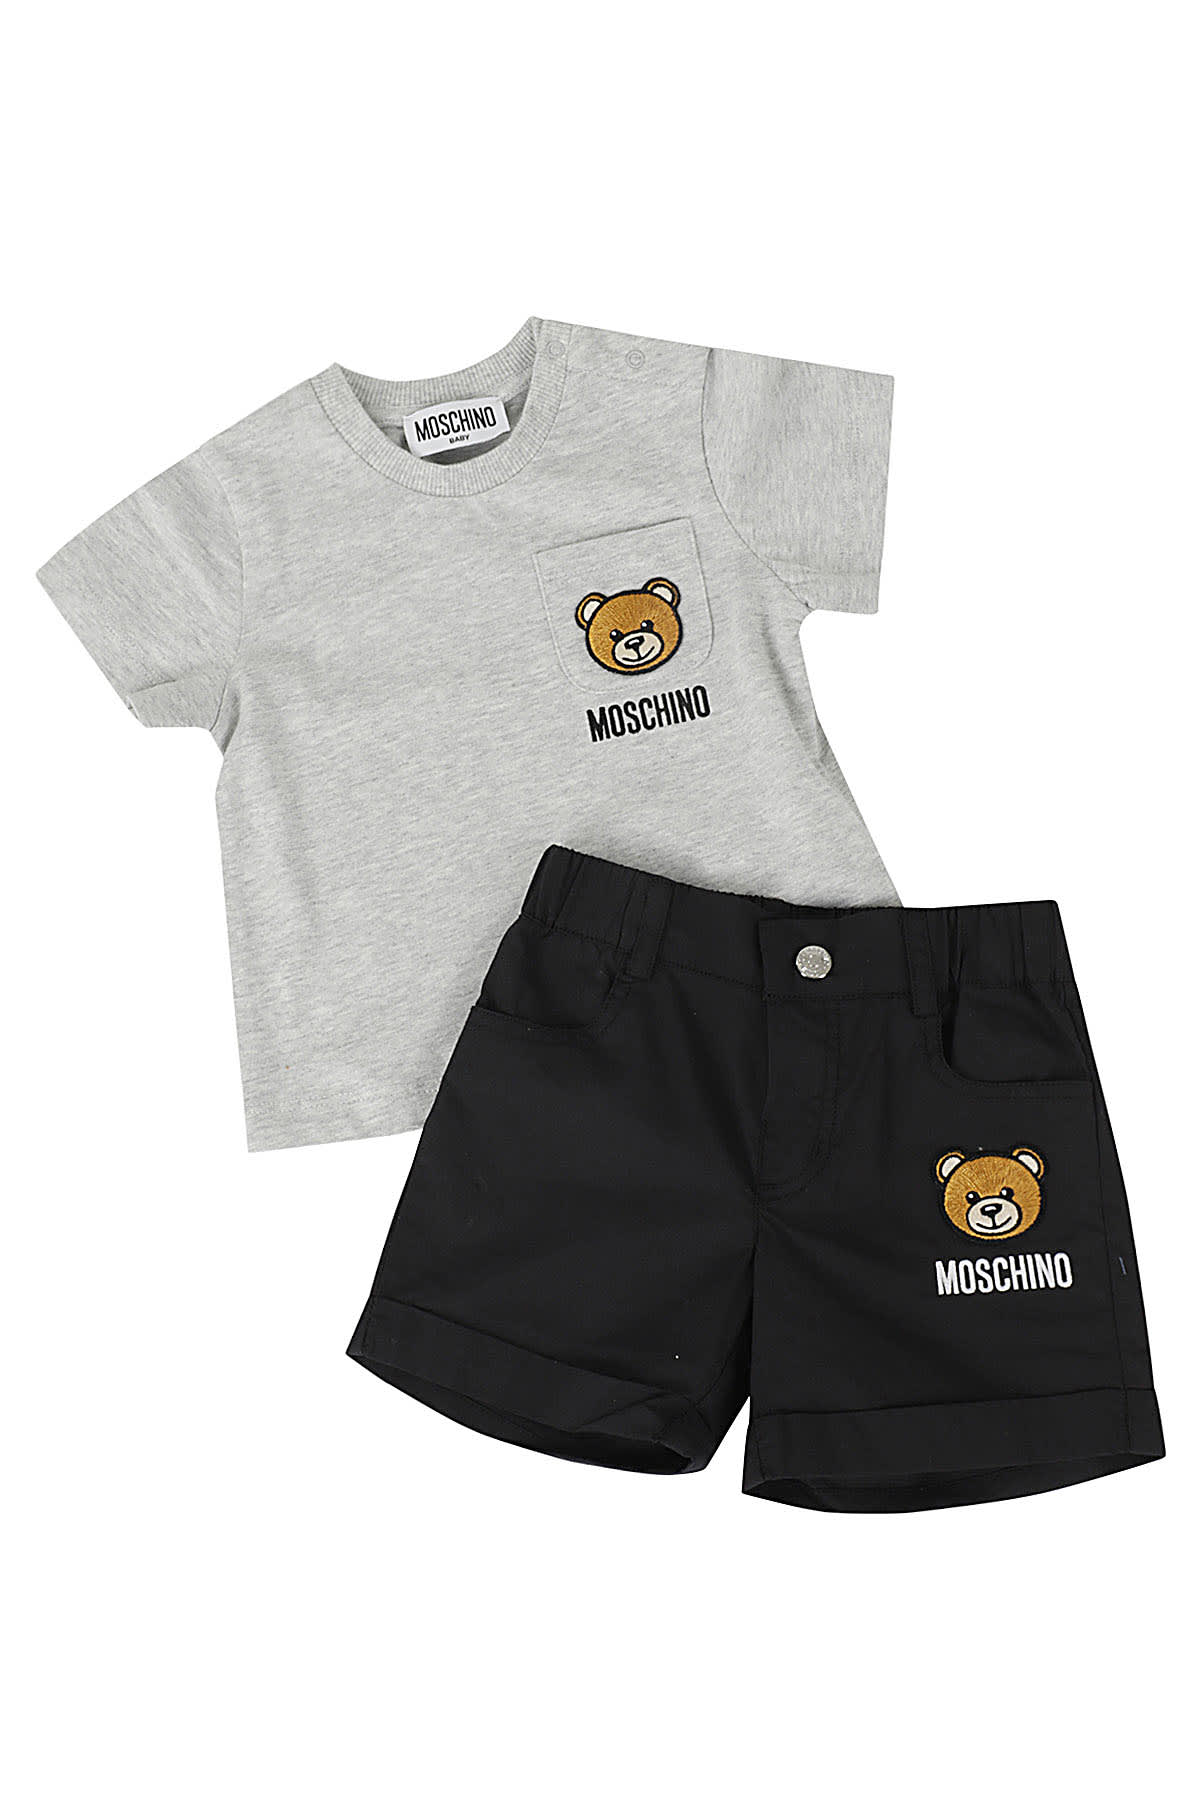 Moschino Babies' 2 Pz Tshirt Shorts In Grigio Chiaro